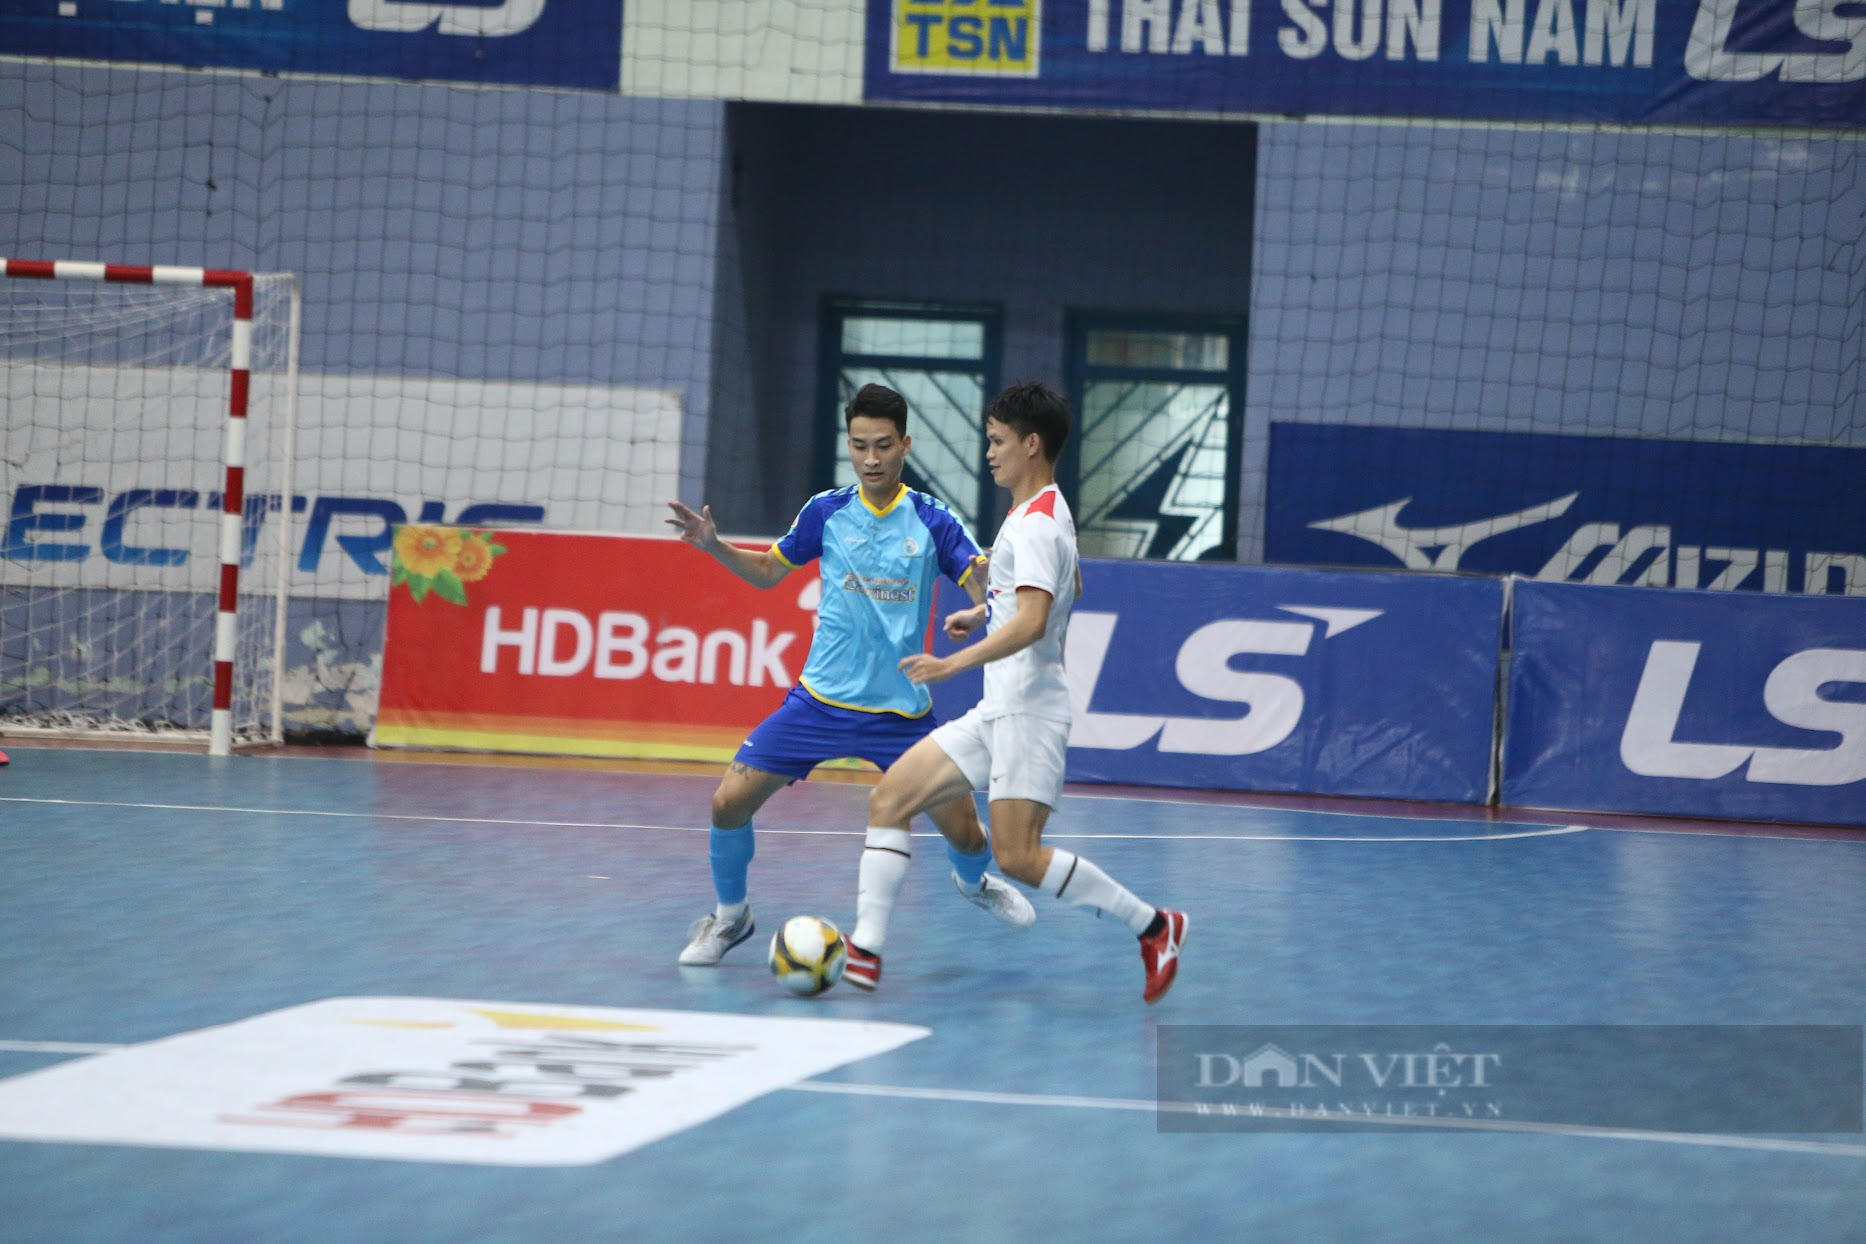 Hạ Sanvinest Khánh Hoà, Thái Sơn Nam chờ ngày đăng quang giải futsal HDBank VĐQG 2023 - Ảnh 1.